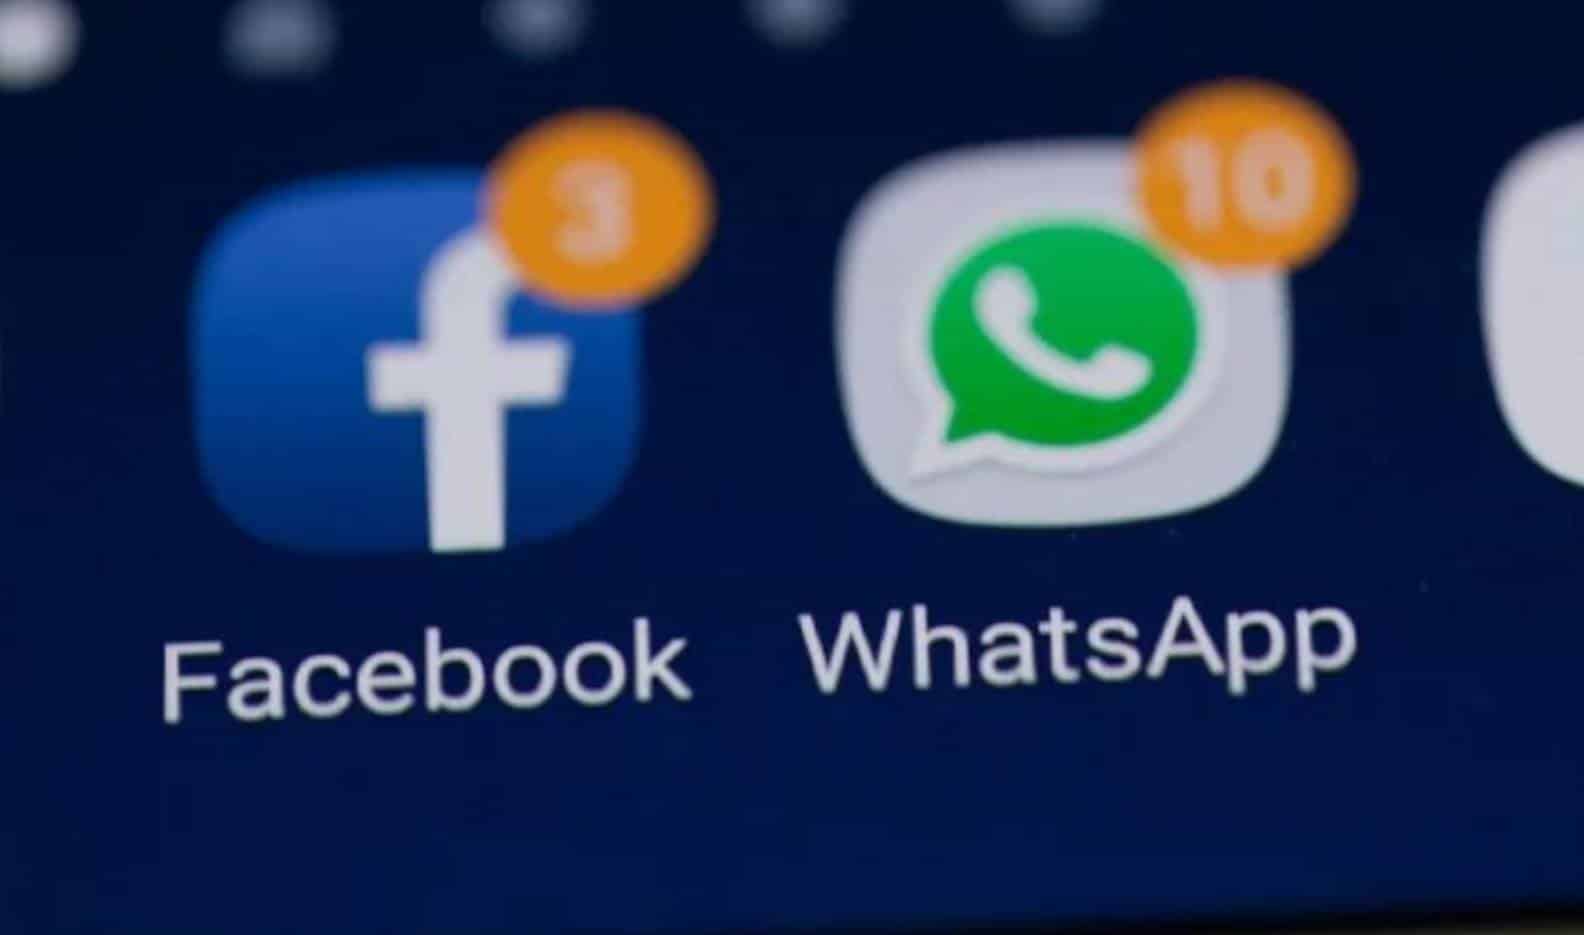 Facebook cria botão de atalho para WhatsApp